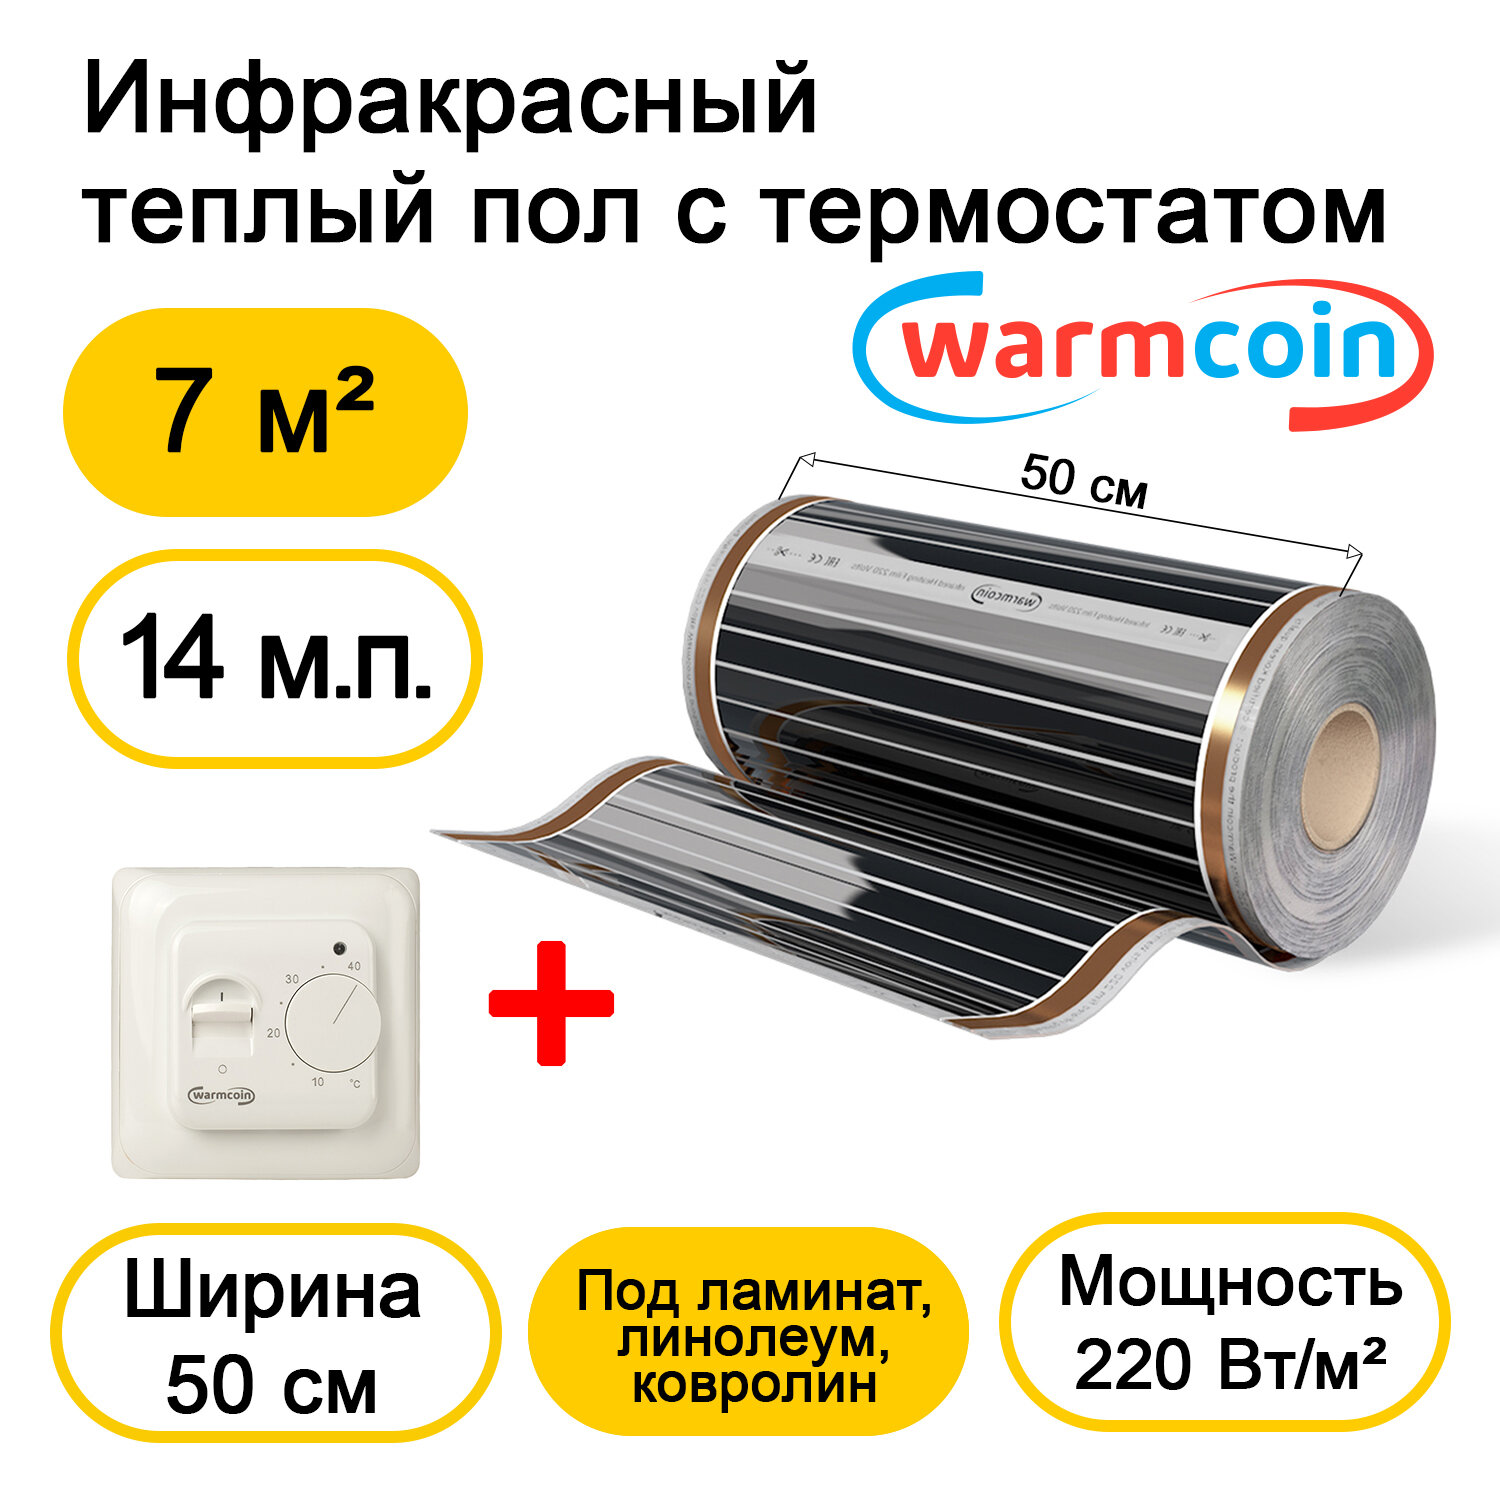 Теплый пол Warmcoin инфракрасный 50см, 220 Вт/м.кв. с механическим терморегулятором, 14 м.п